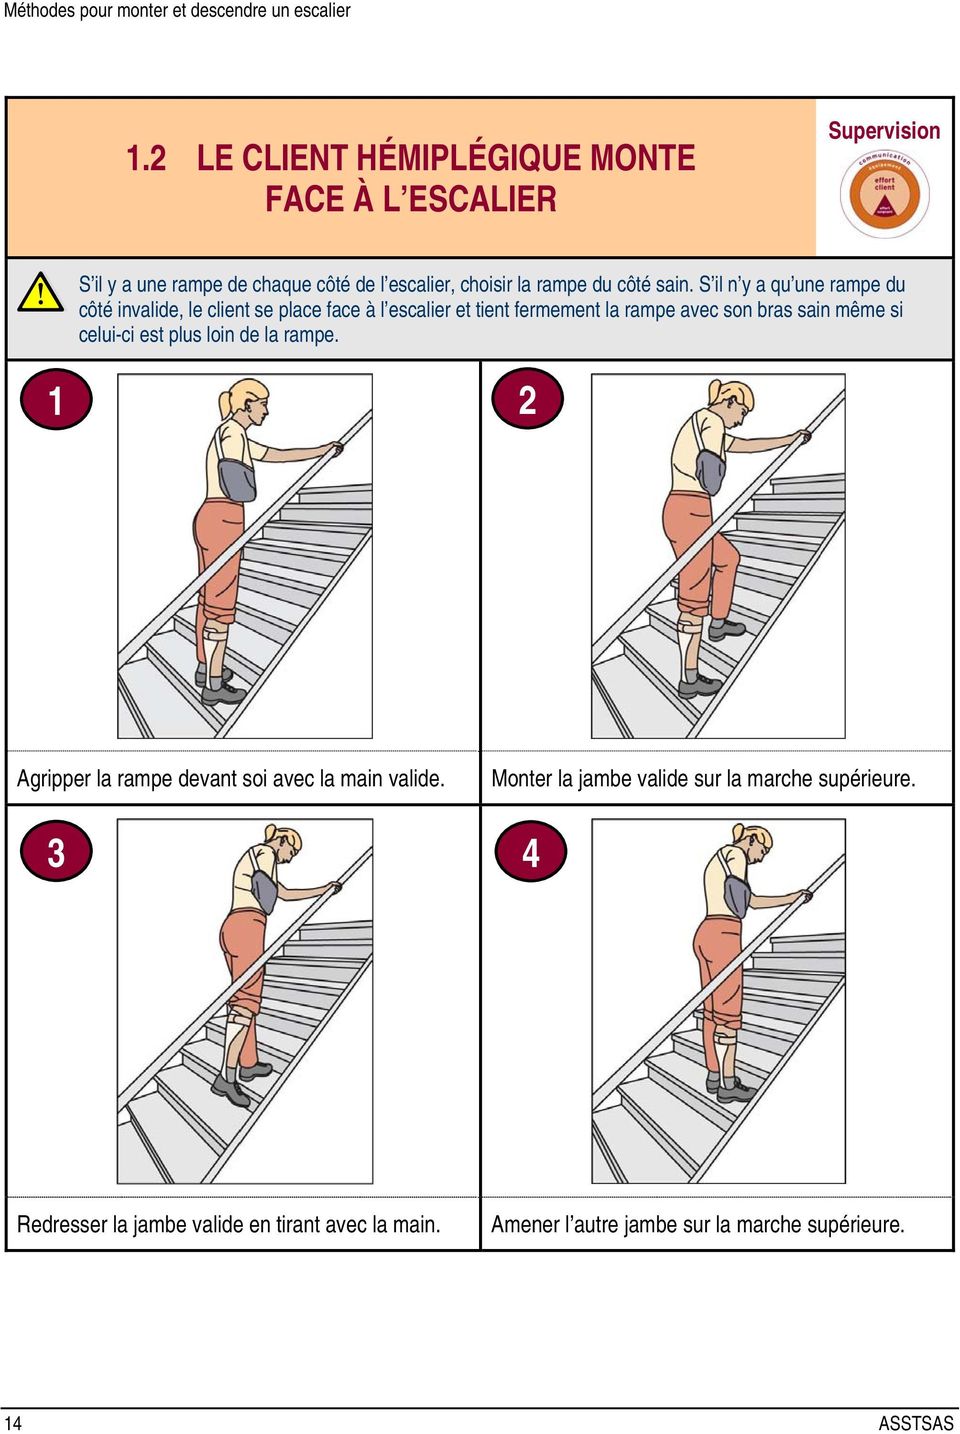 S il n y a qu une rampe du côté invalide, le client se place face à l escalier et tient fermement la rampe avec son bras sain même